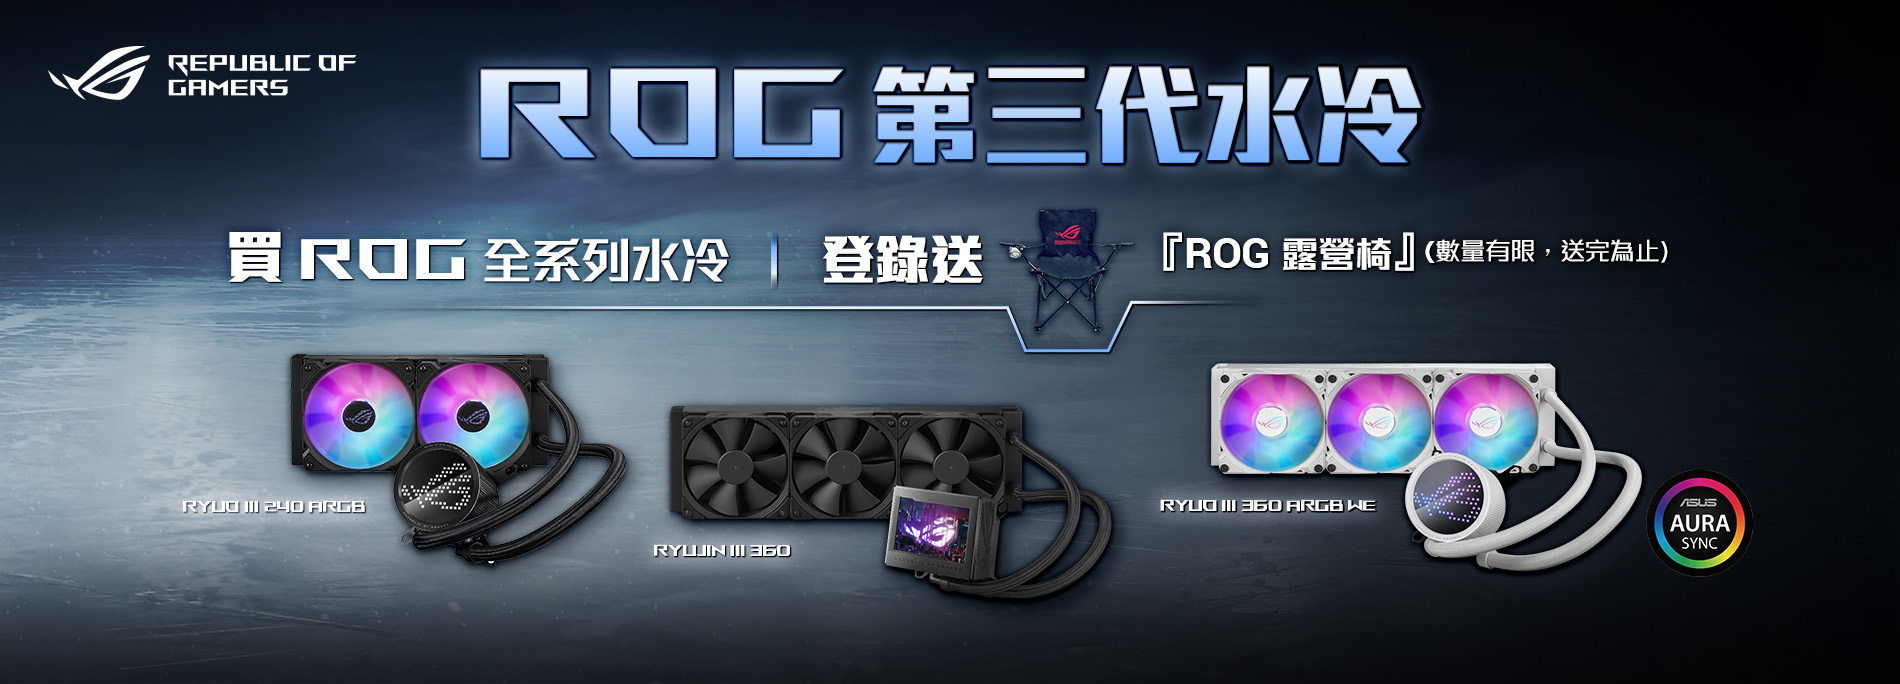 [情報] ROG龍神III出RGB版本+送露營椅活動